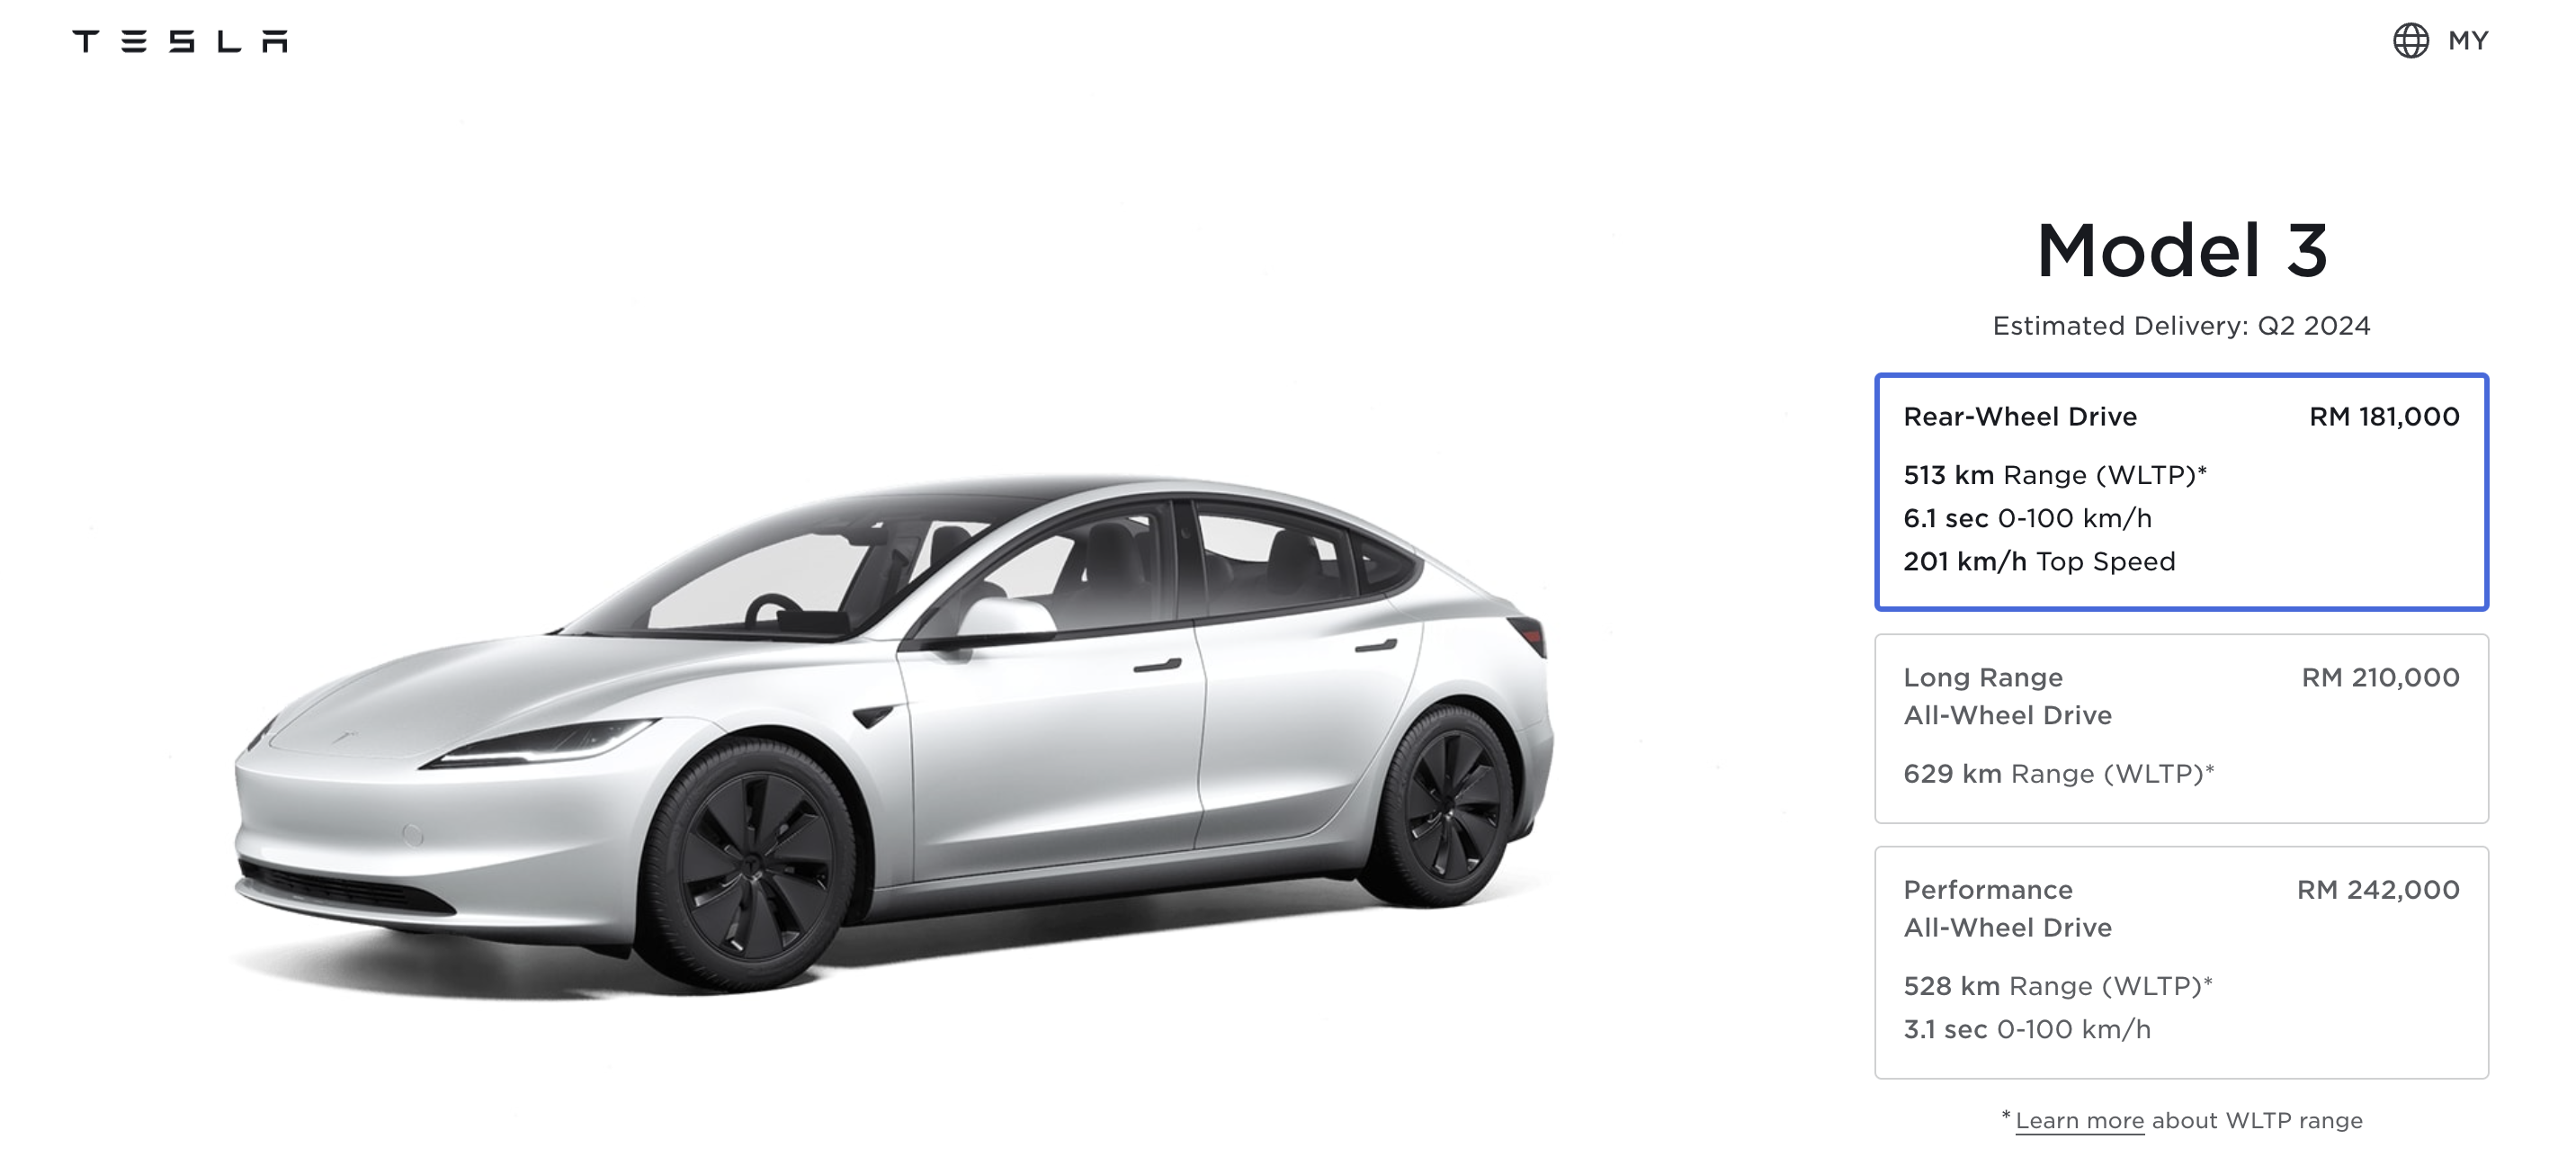 Tesla model 3 new price